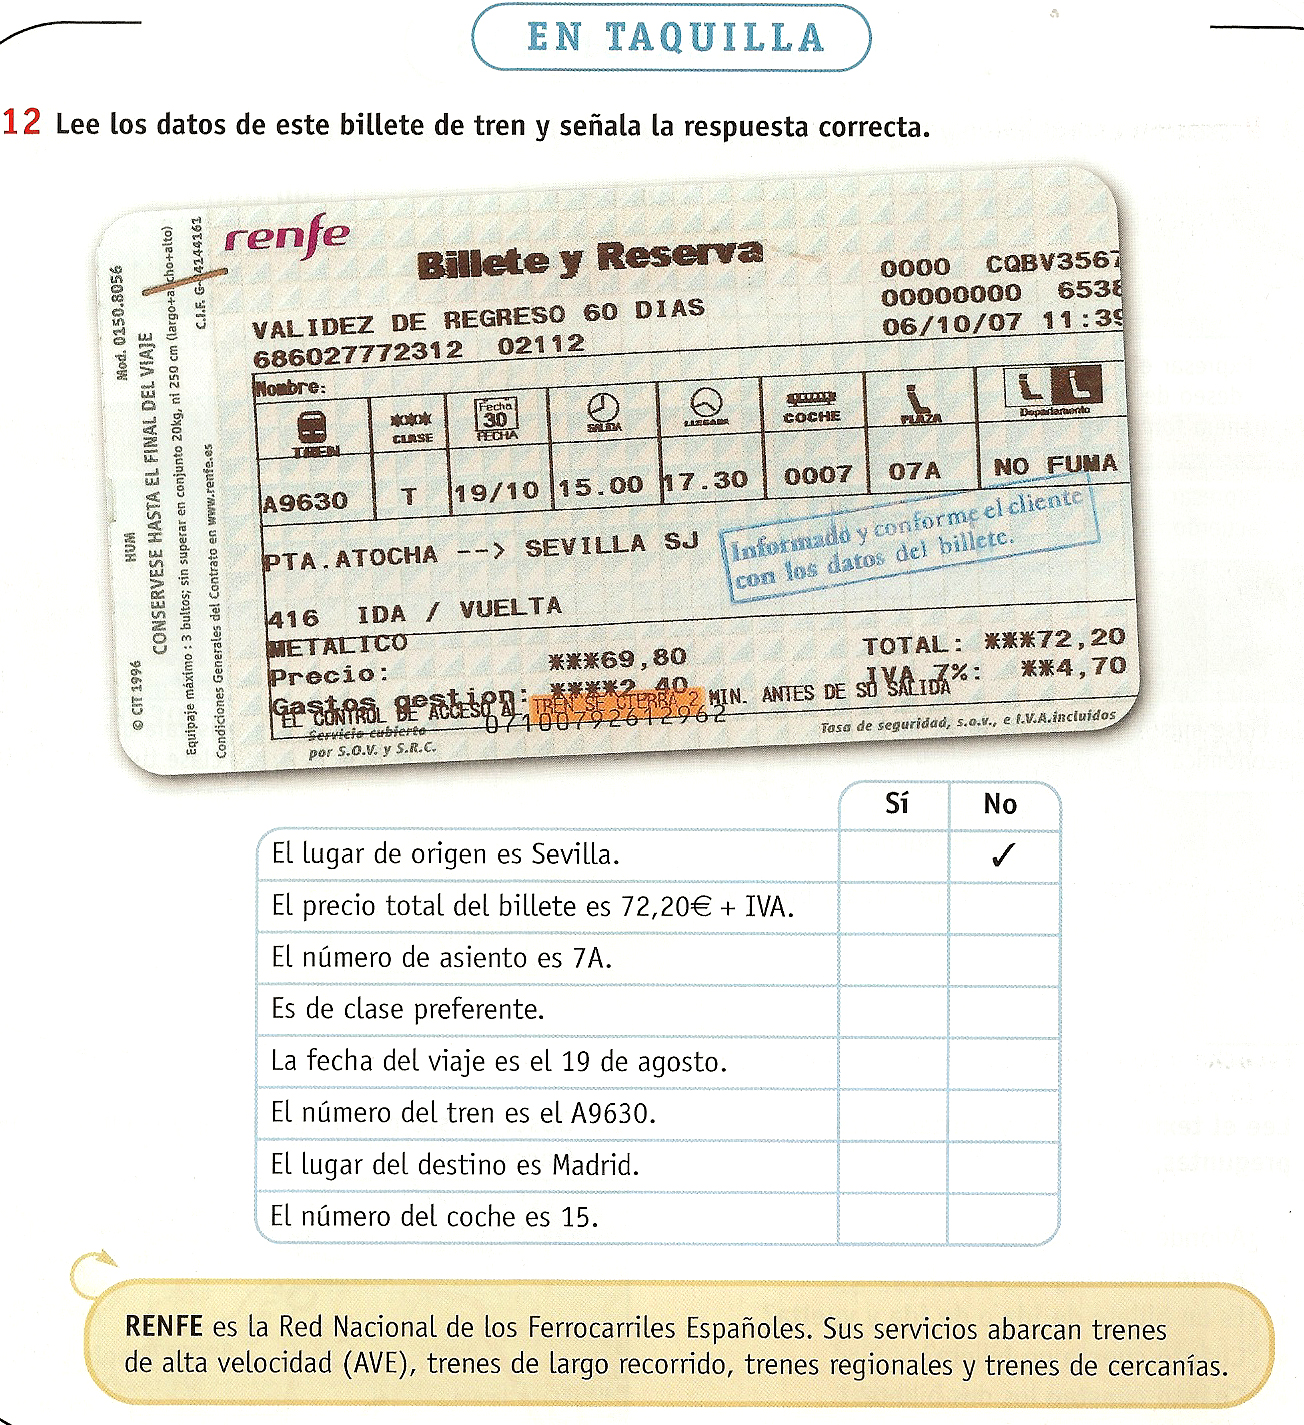 Isabel Sanz, F - (Coord) (2008): Horizontes - Español Nueva Lengua - Libro del alumno - Madrid SM P 30